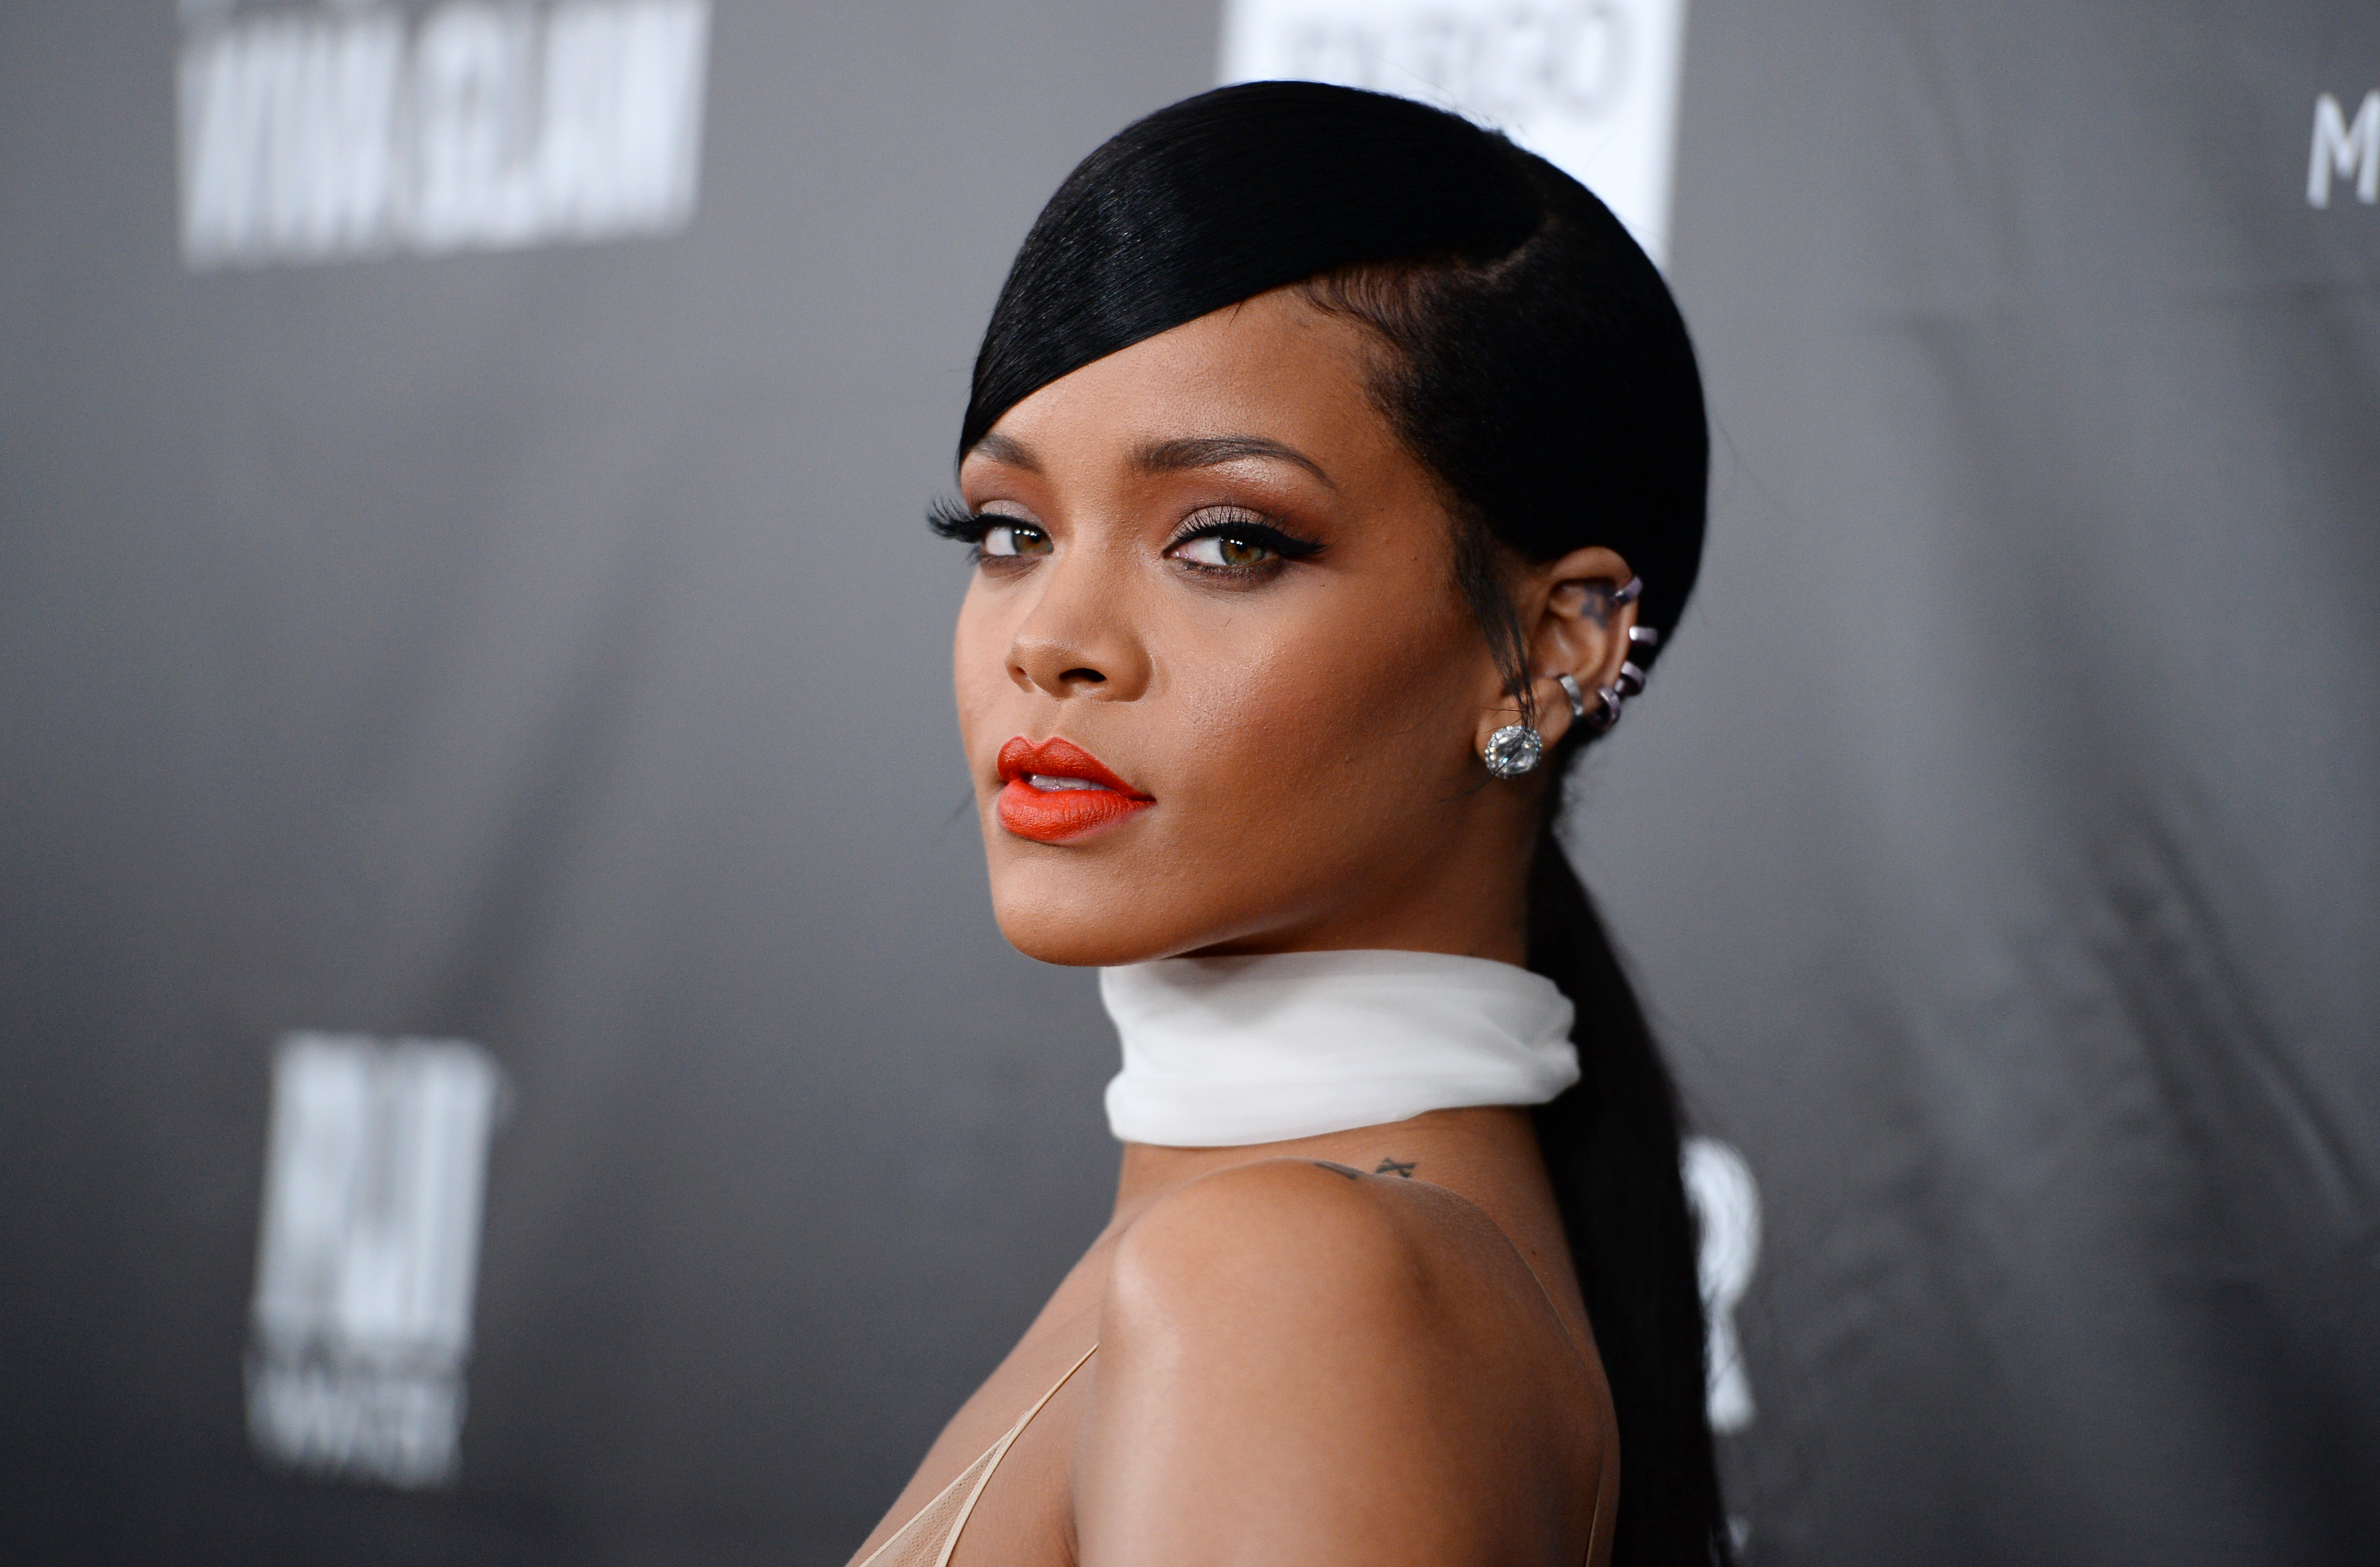 Rihanna Backgrounds, Compatible - PC, Mobile, Gadgets| 3548x2336 px